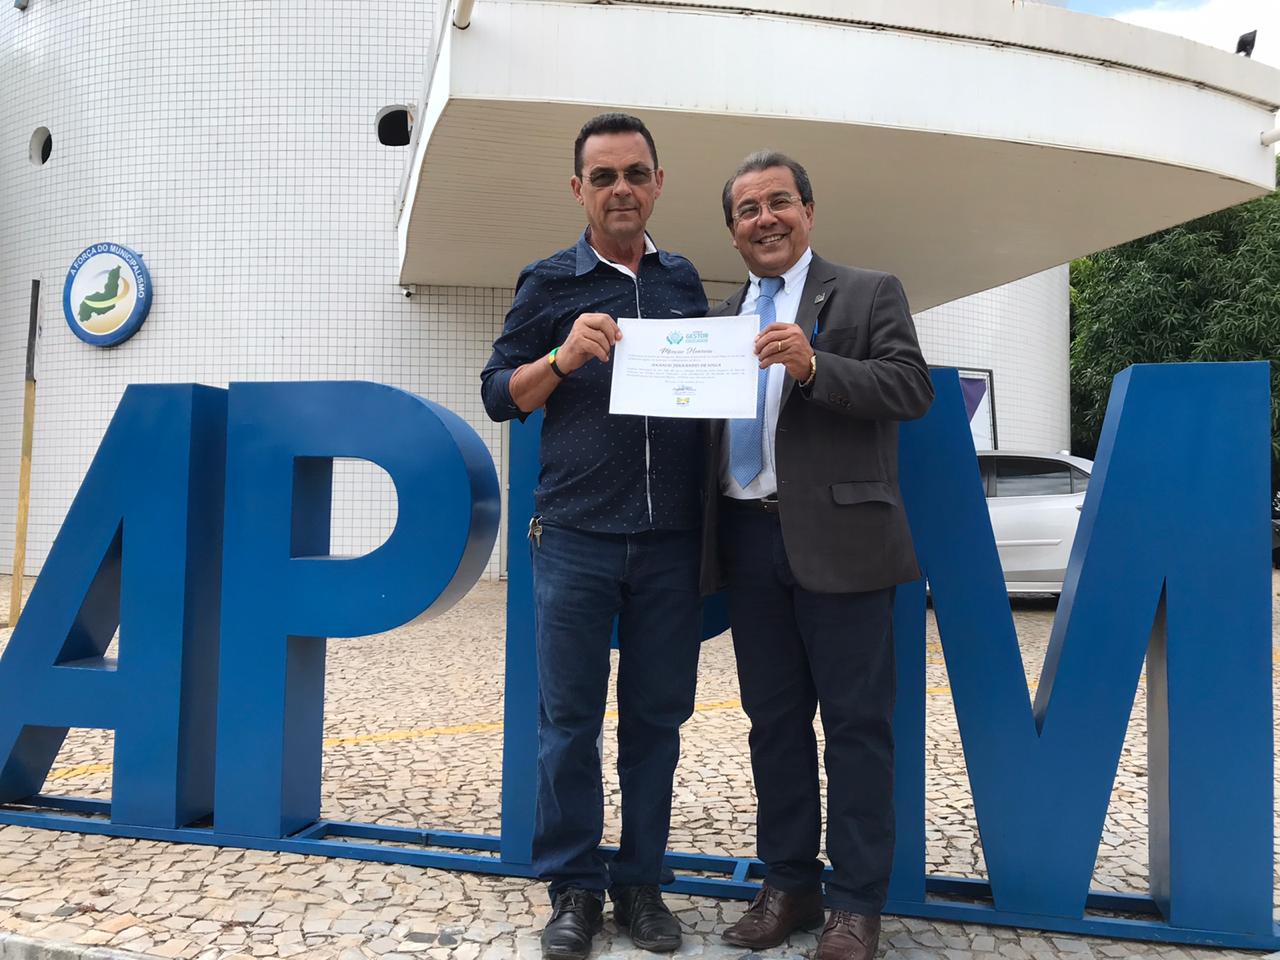 Prefeitura de São João da Serra recebe mensão honrosa do prêmio gestor educador